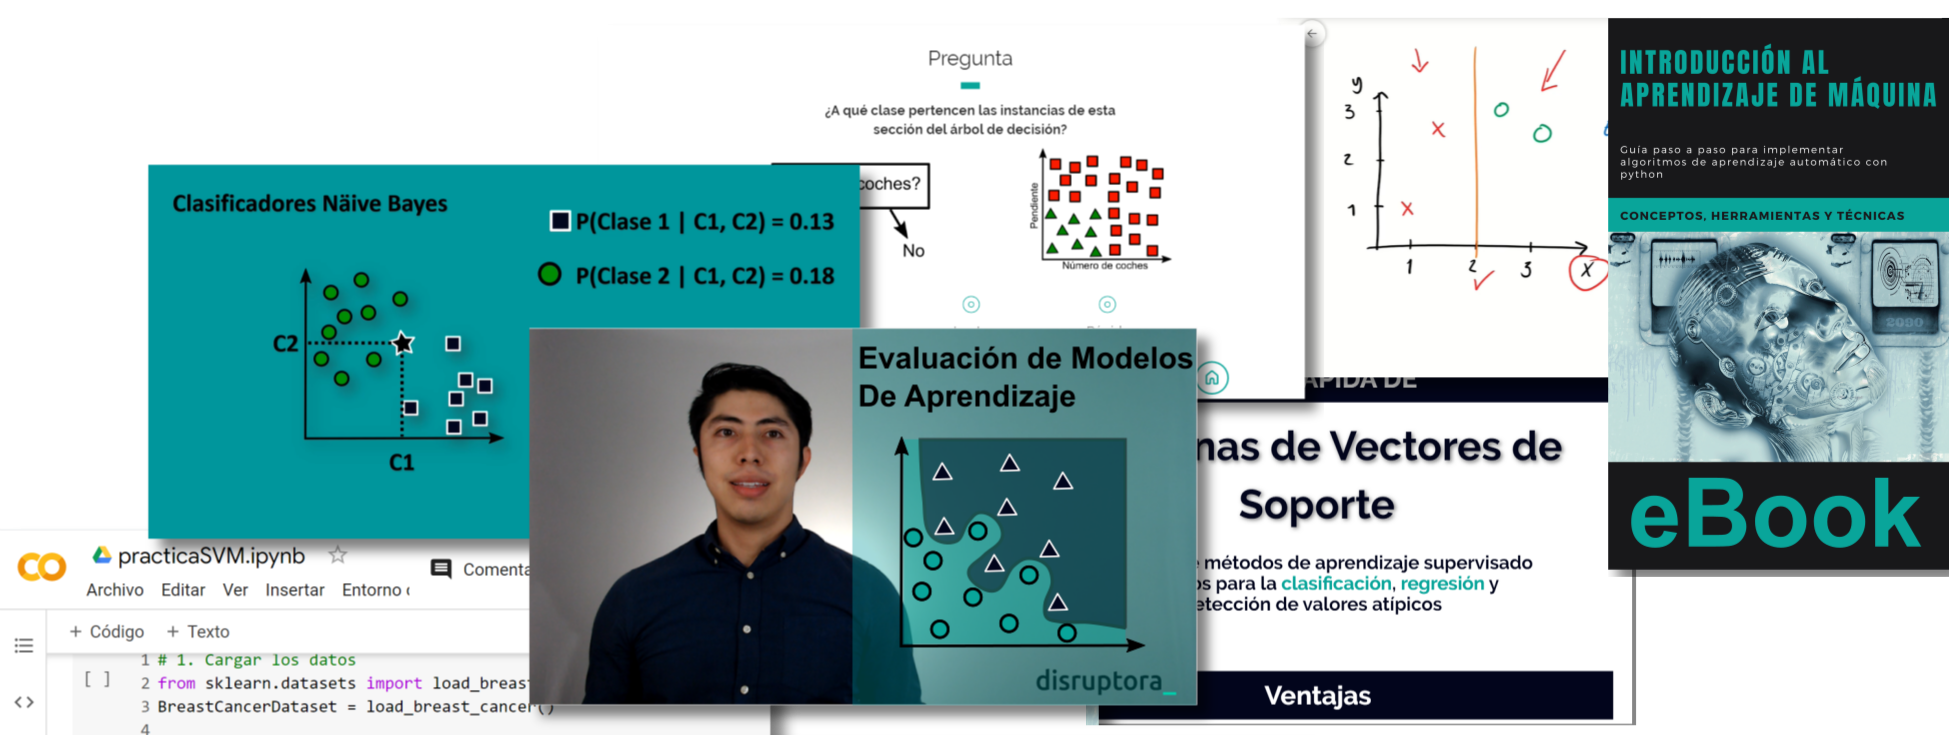 Curso en español de Inteligencia Artificial, Python y Machine Learning